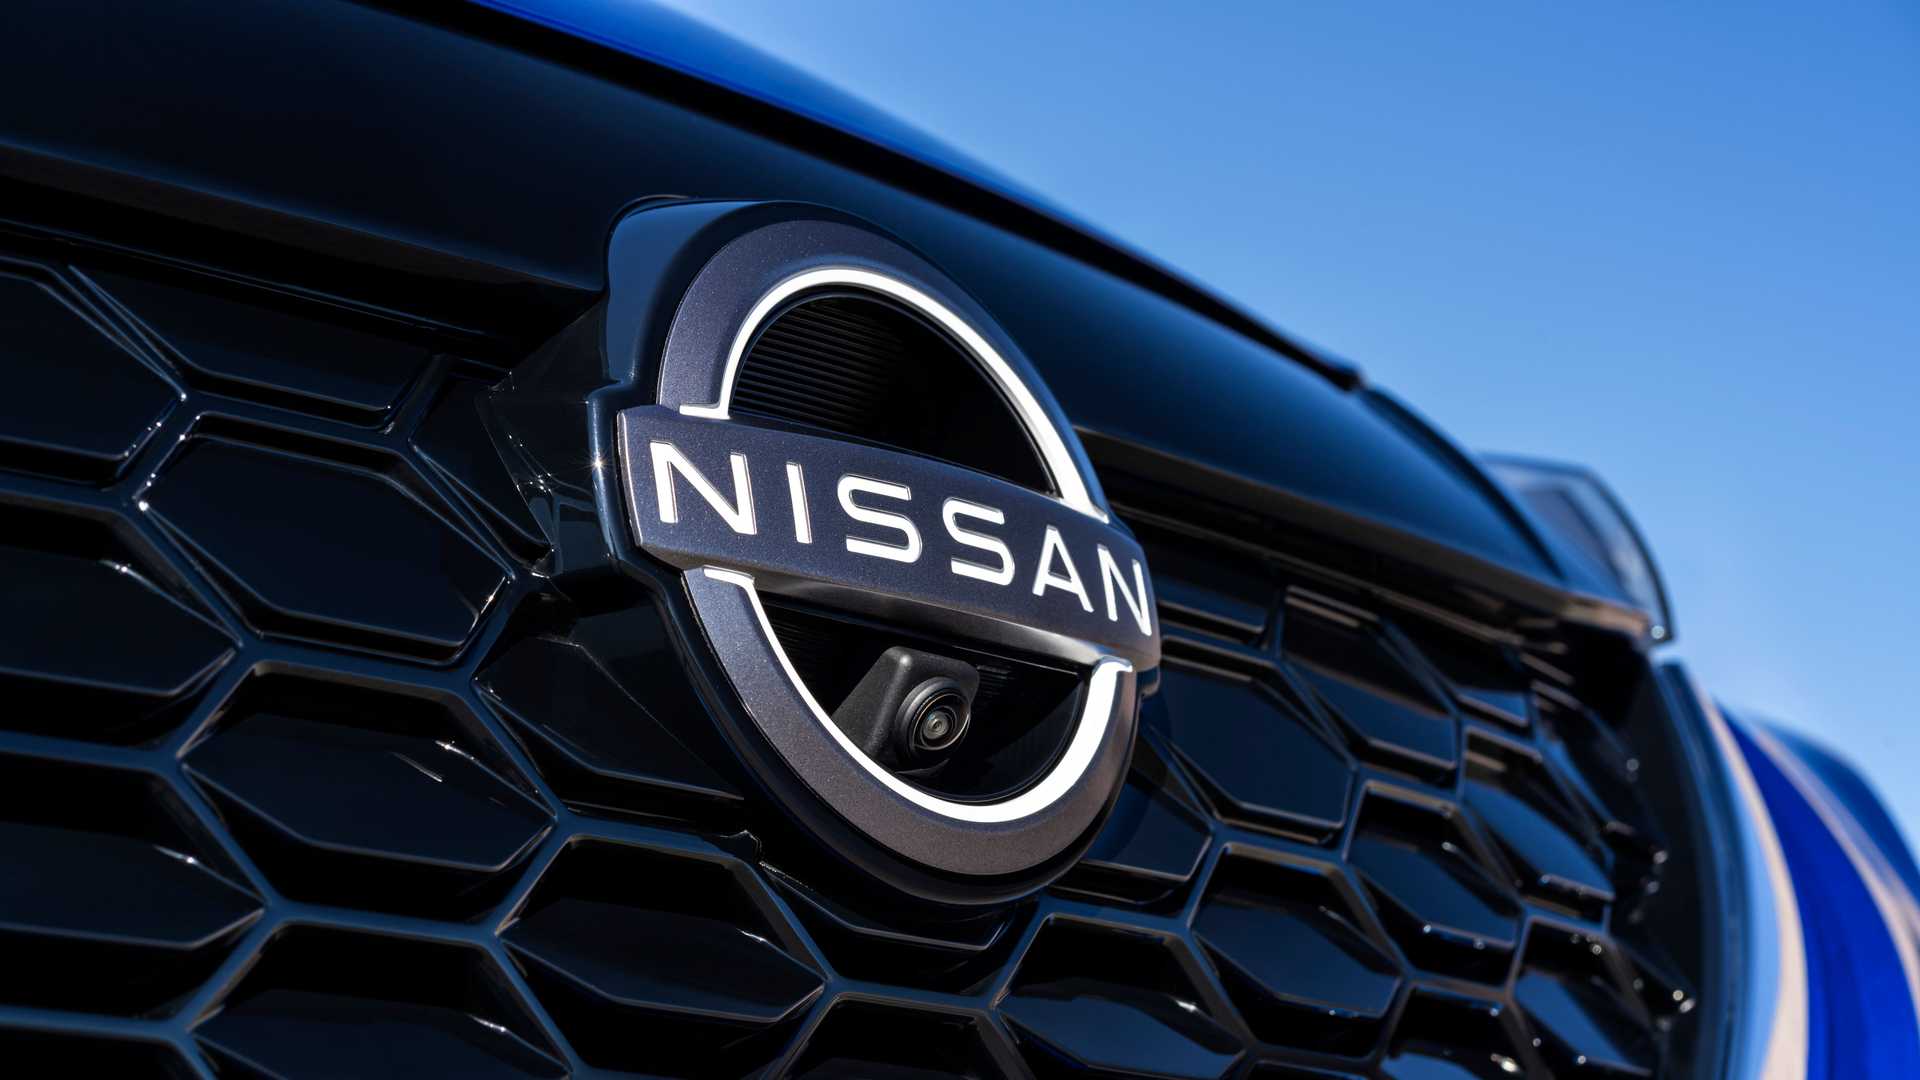 2022 Nissan Juke Hybrid tanıtıldı: İşte tasarımı ve özellikleri